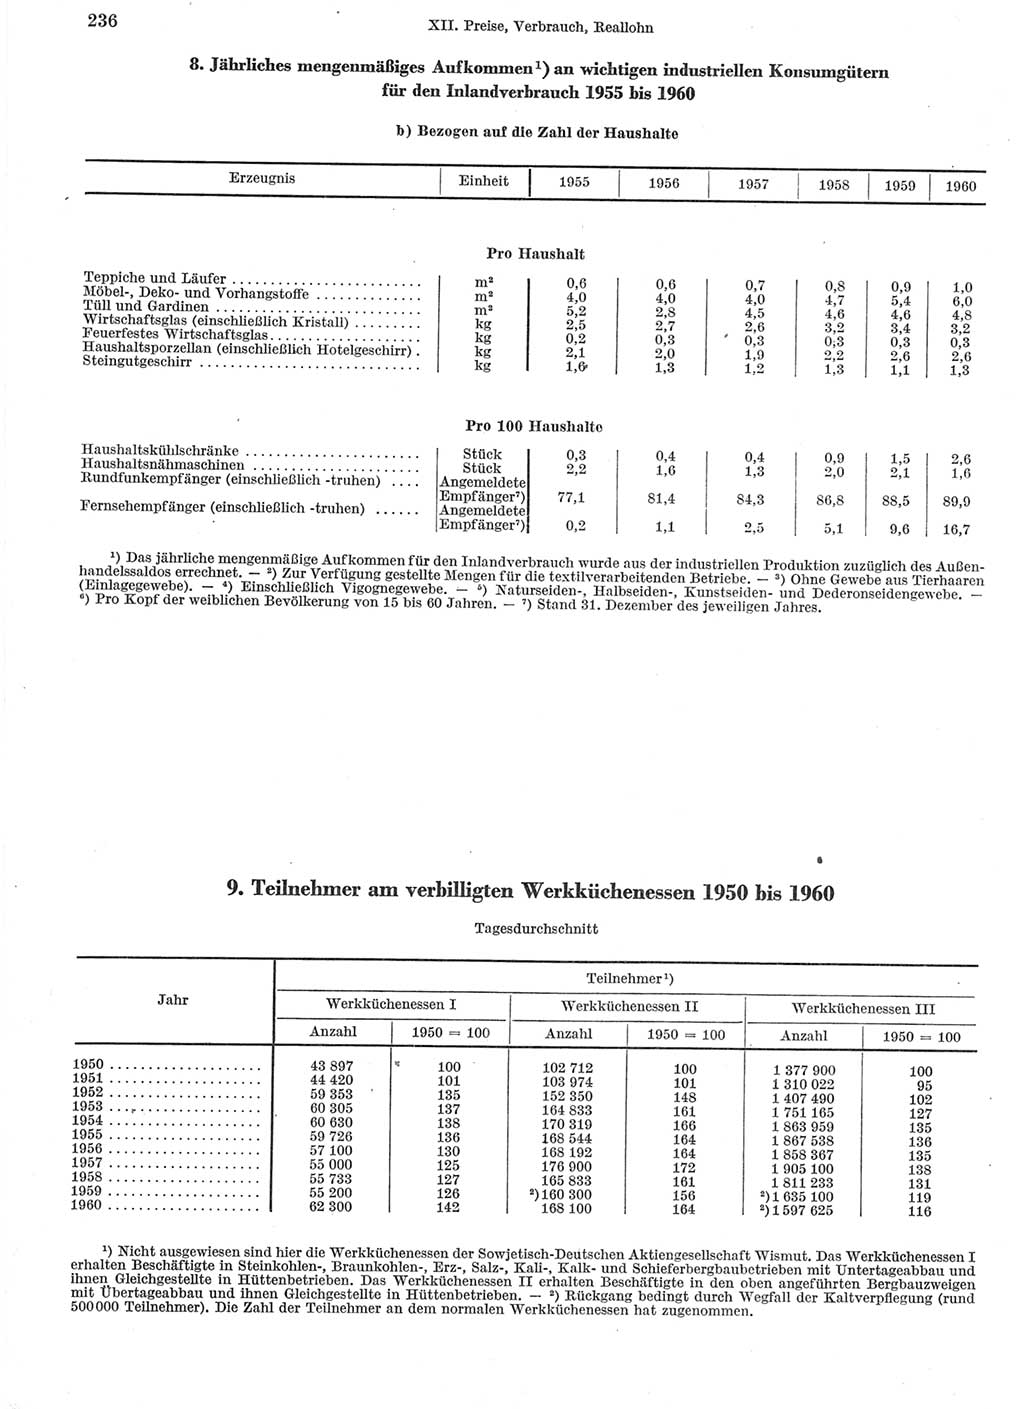 Statistisches Jahrbuch der Deutschen Demokratischen Republik (DDR) 1960-1961, Seite 236 (Stat. Jb. DDR 1960-1961, S. 236)